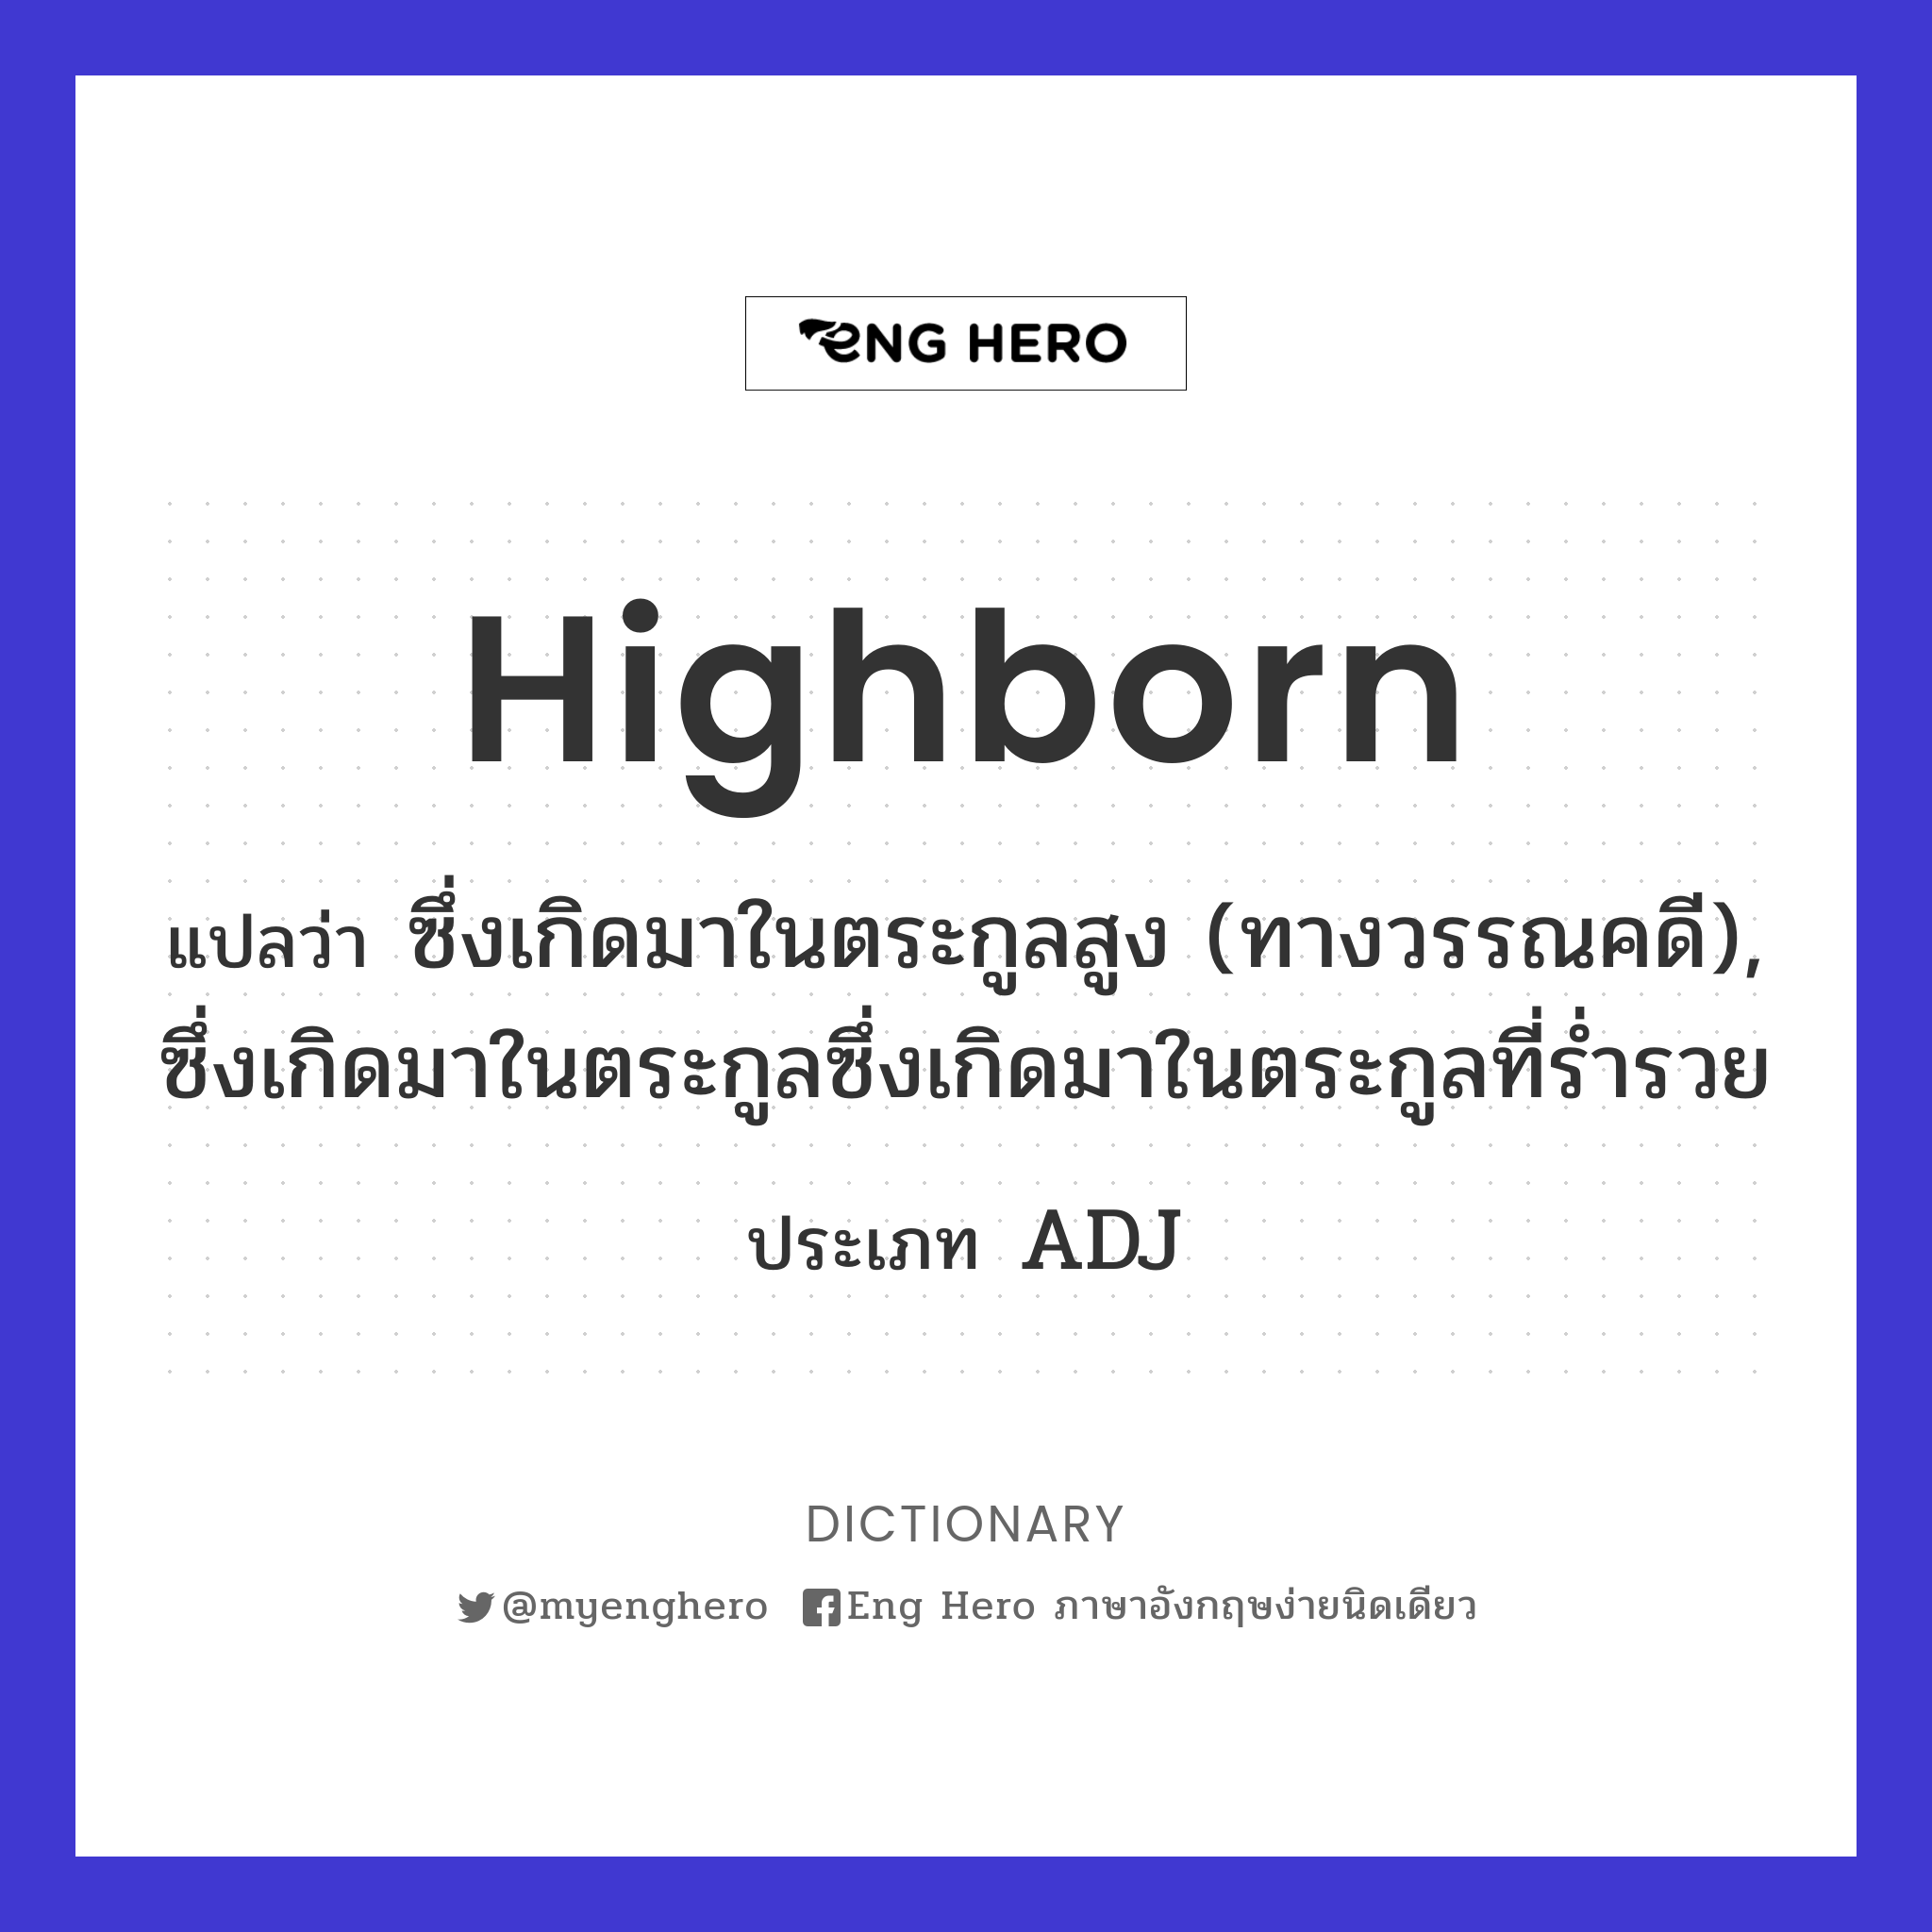 highborn